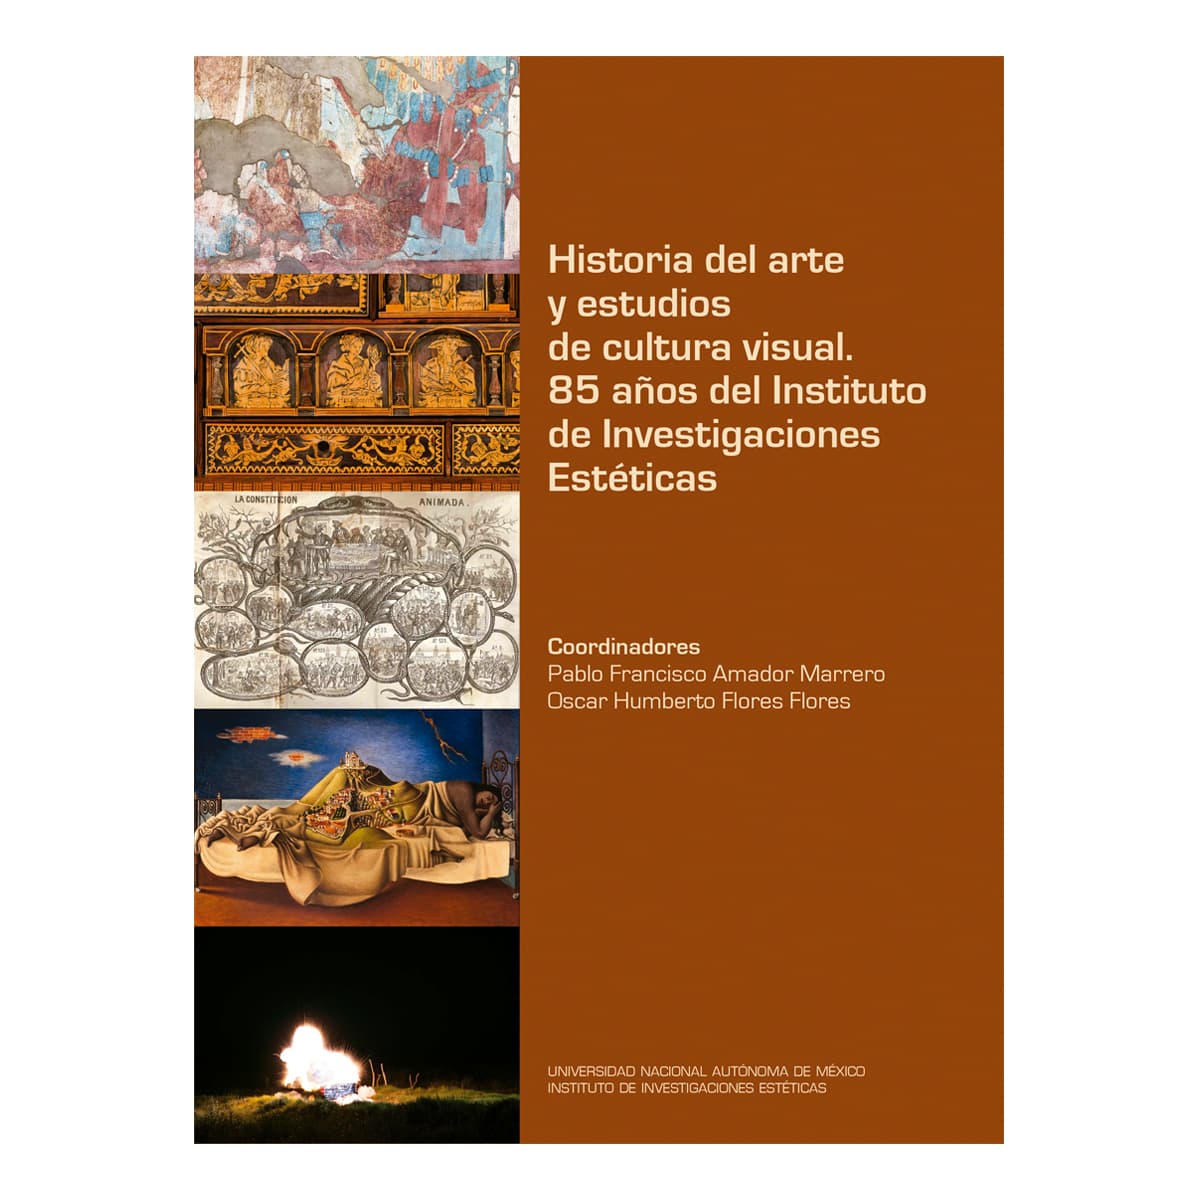 HISTORIA DEL ARTE Y ESTUDIOS DE CULTURA VISUAL. 85 AÑOS DEL INSTITUTO DE INVESTIGACIONES ESTÉTICAS